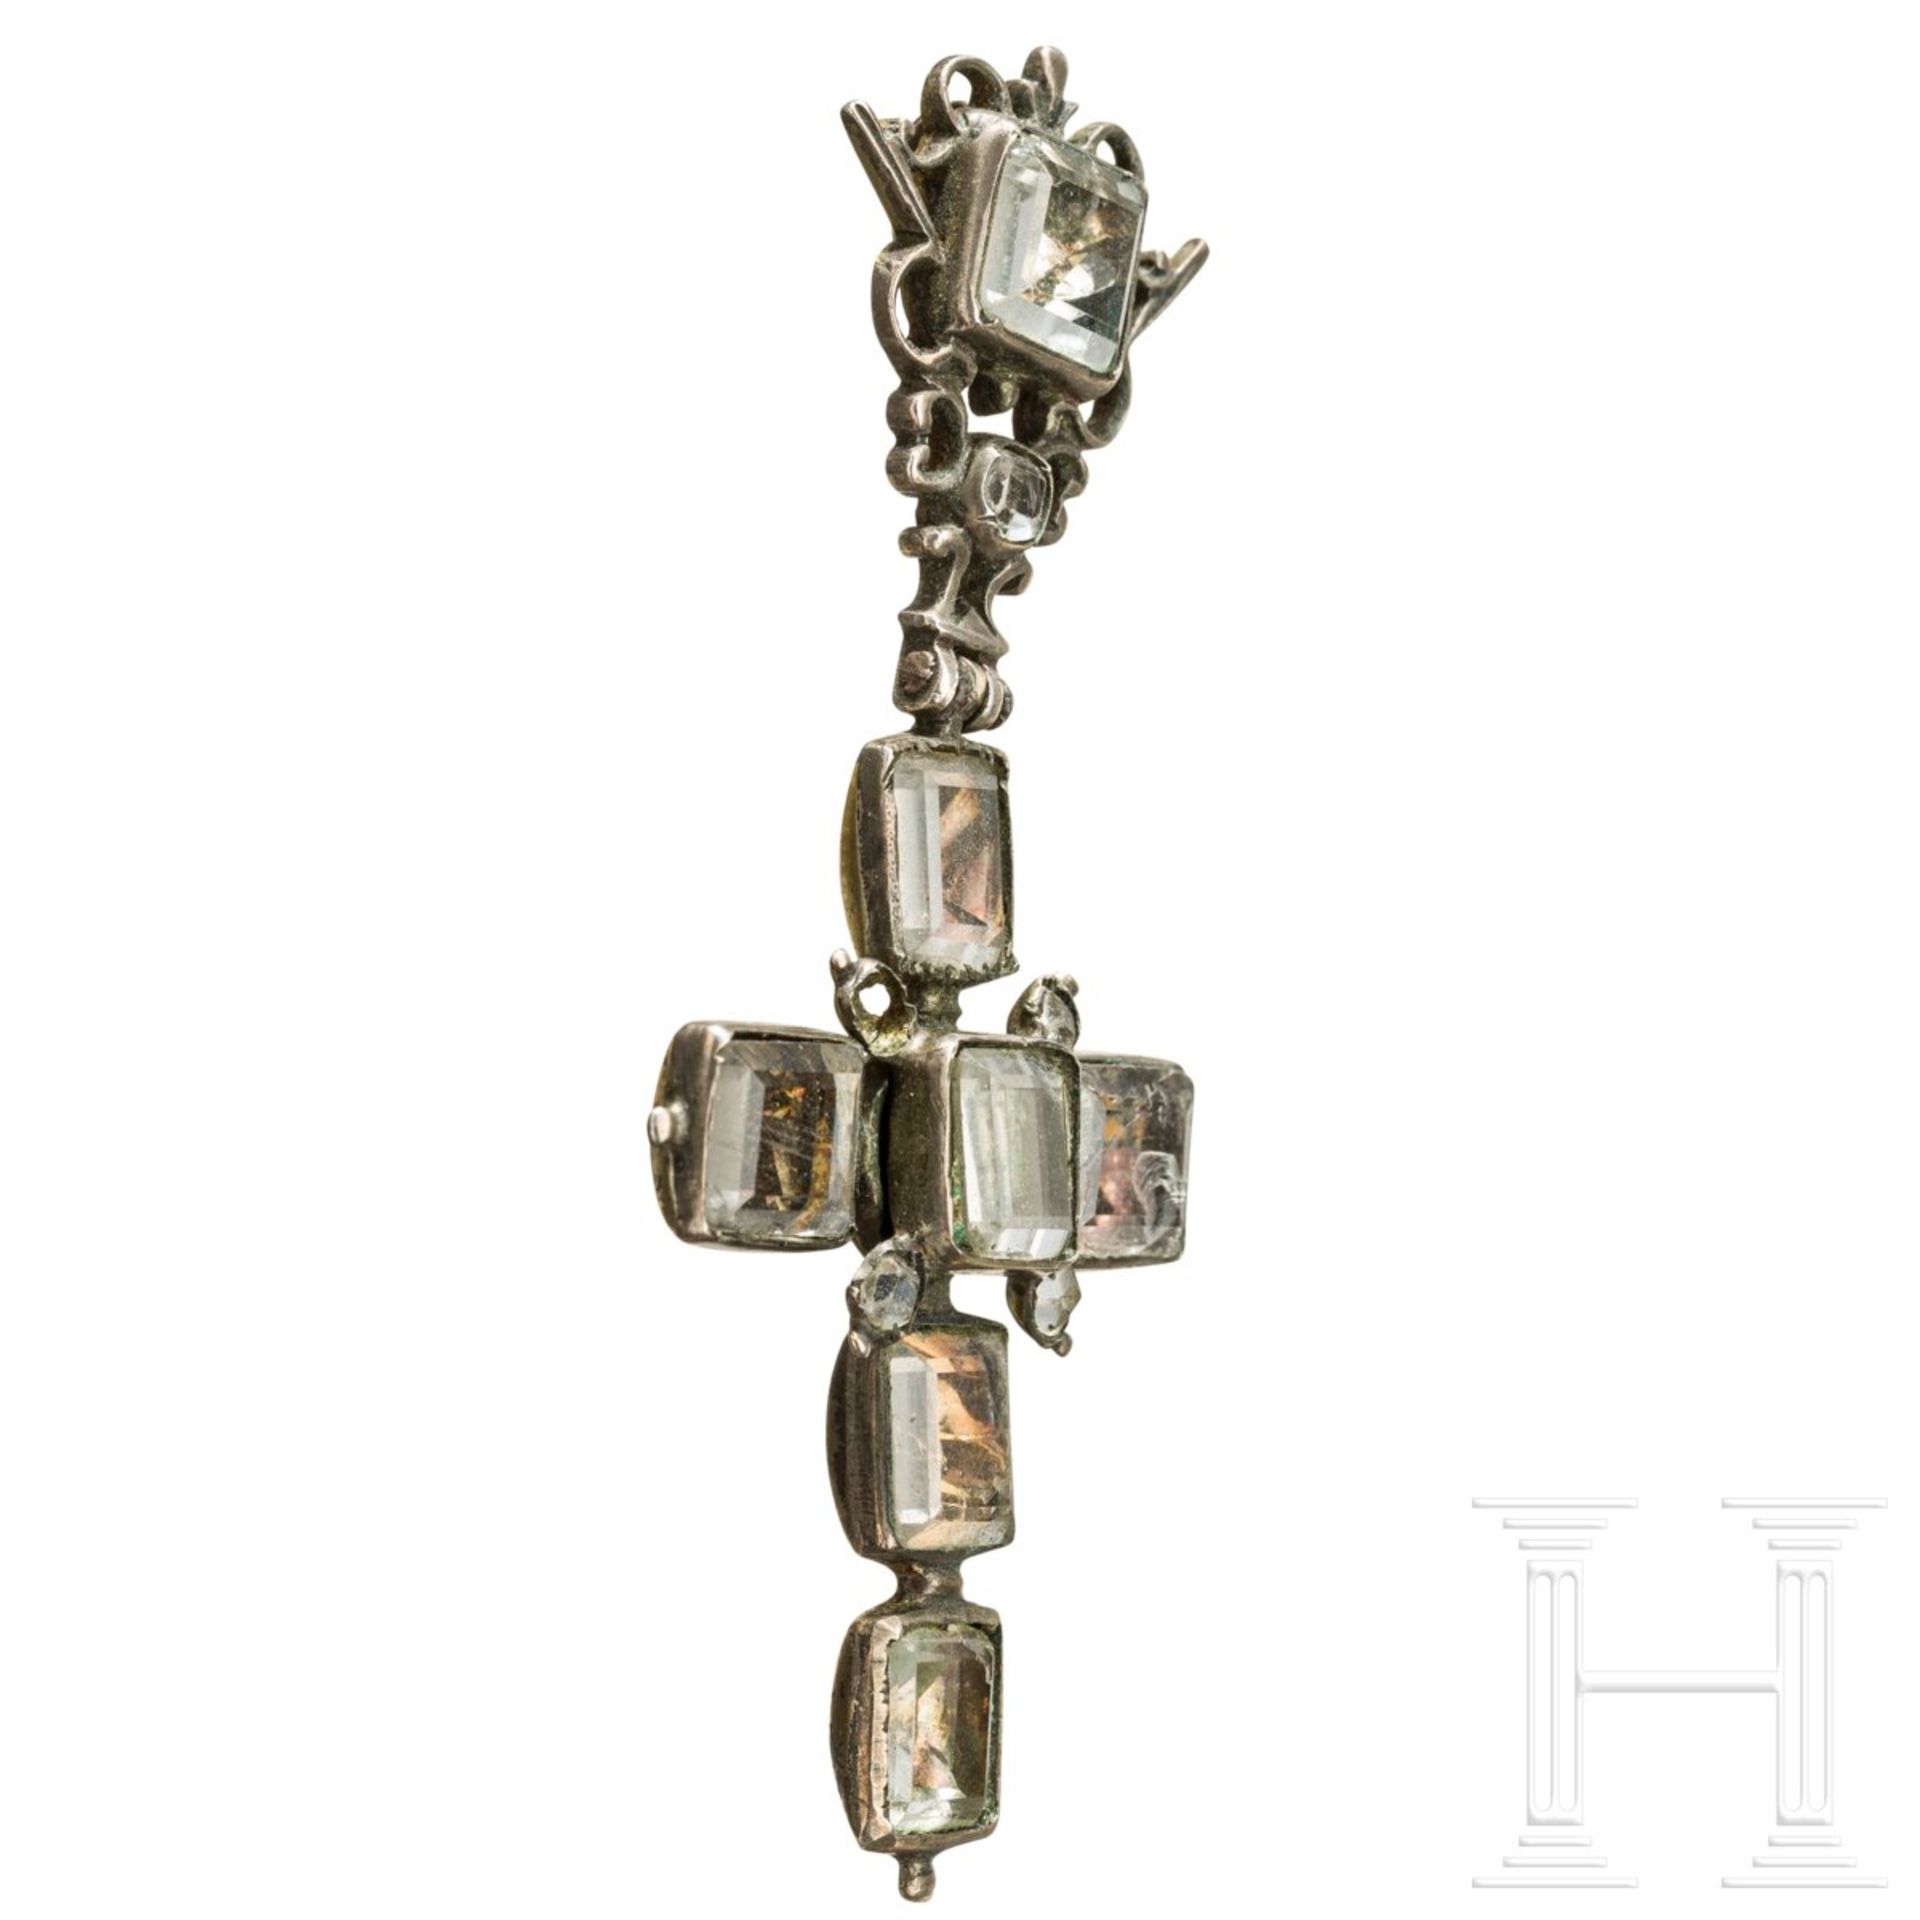 Barocker Kreuzanhänger mit Steinbesatz, süddeutsch, 1. Hälfte 18. Jhdt. - Bild 3 aus 4